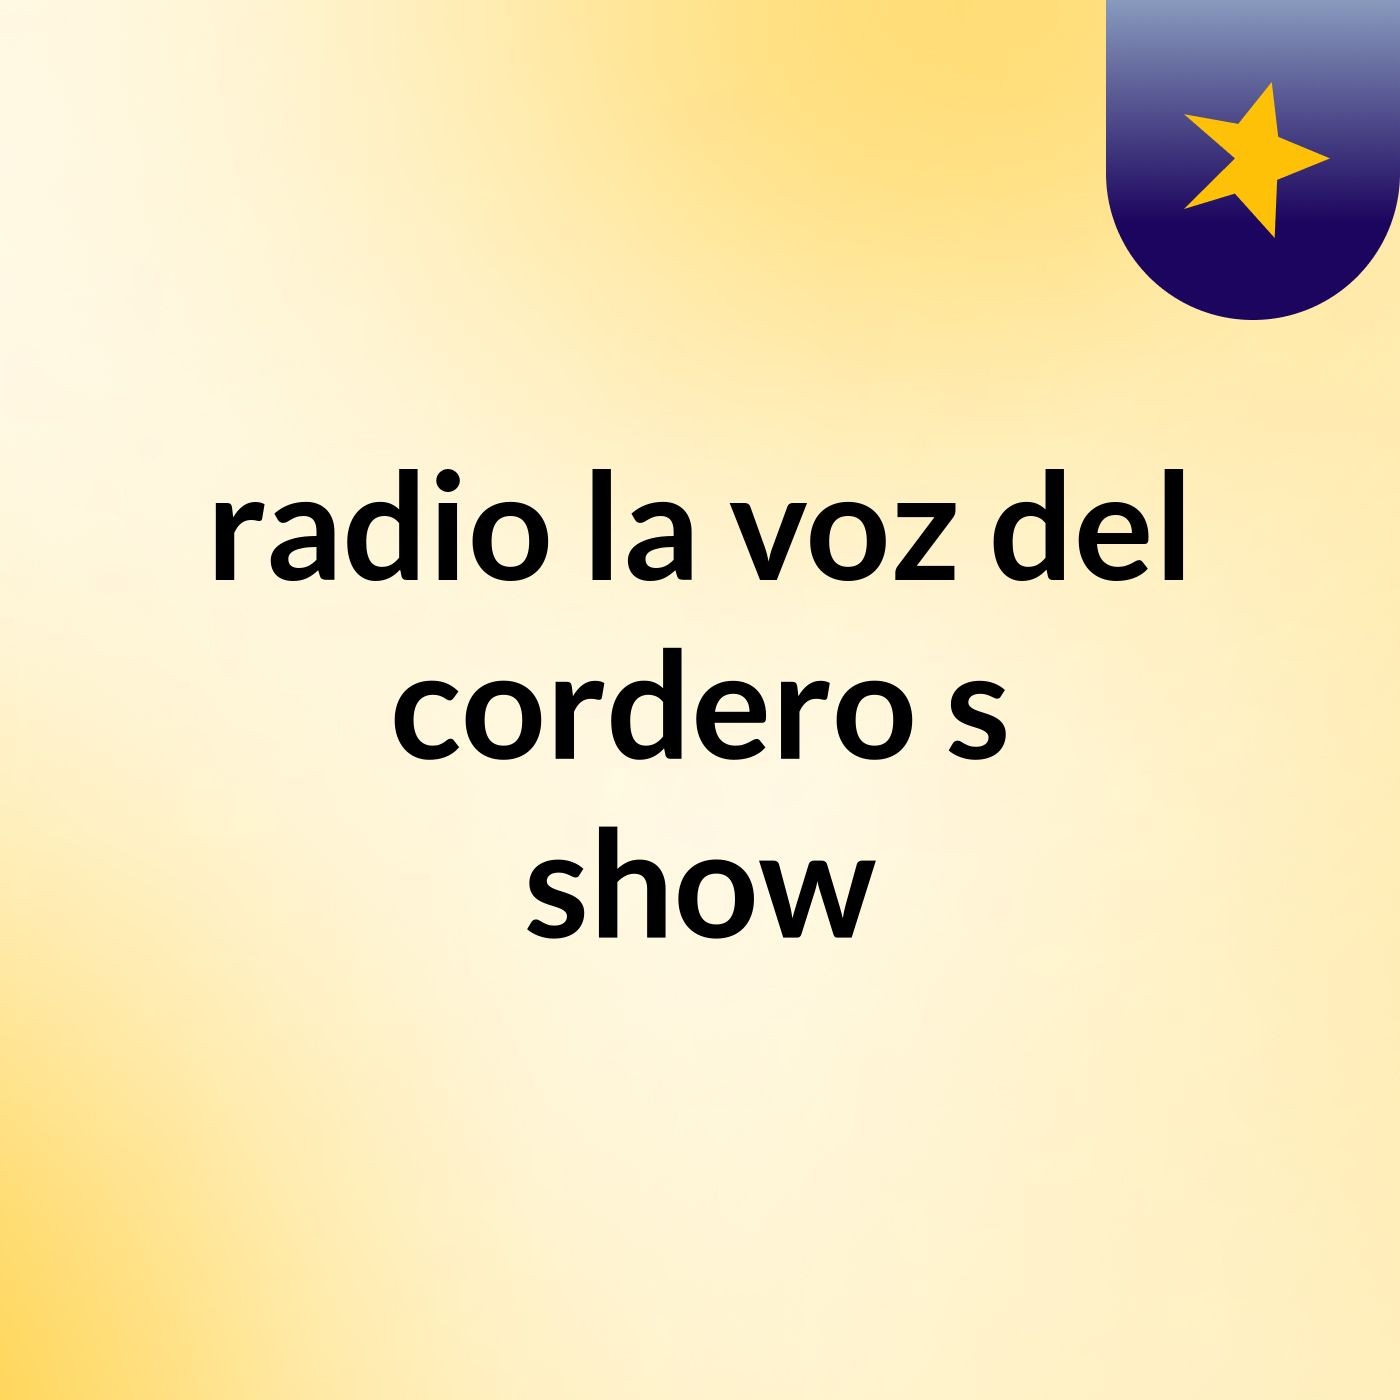 radio la voz del cordero's show